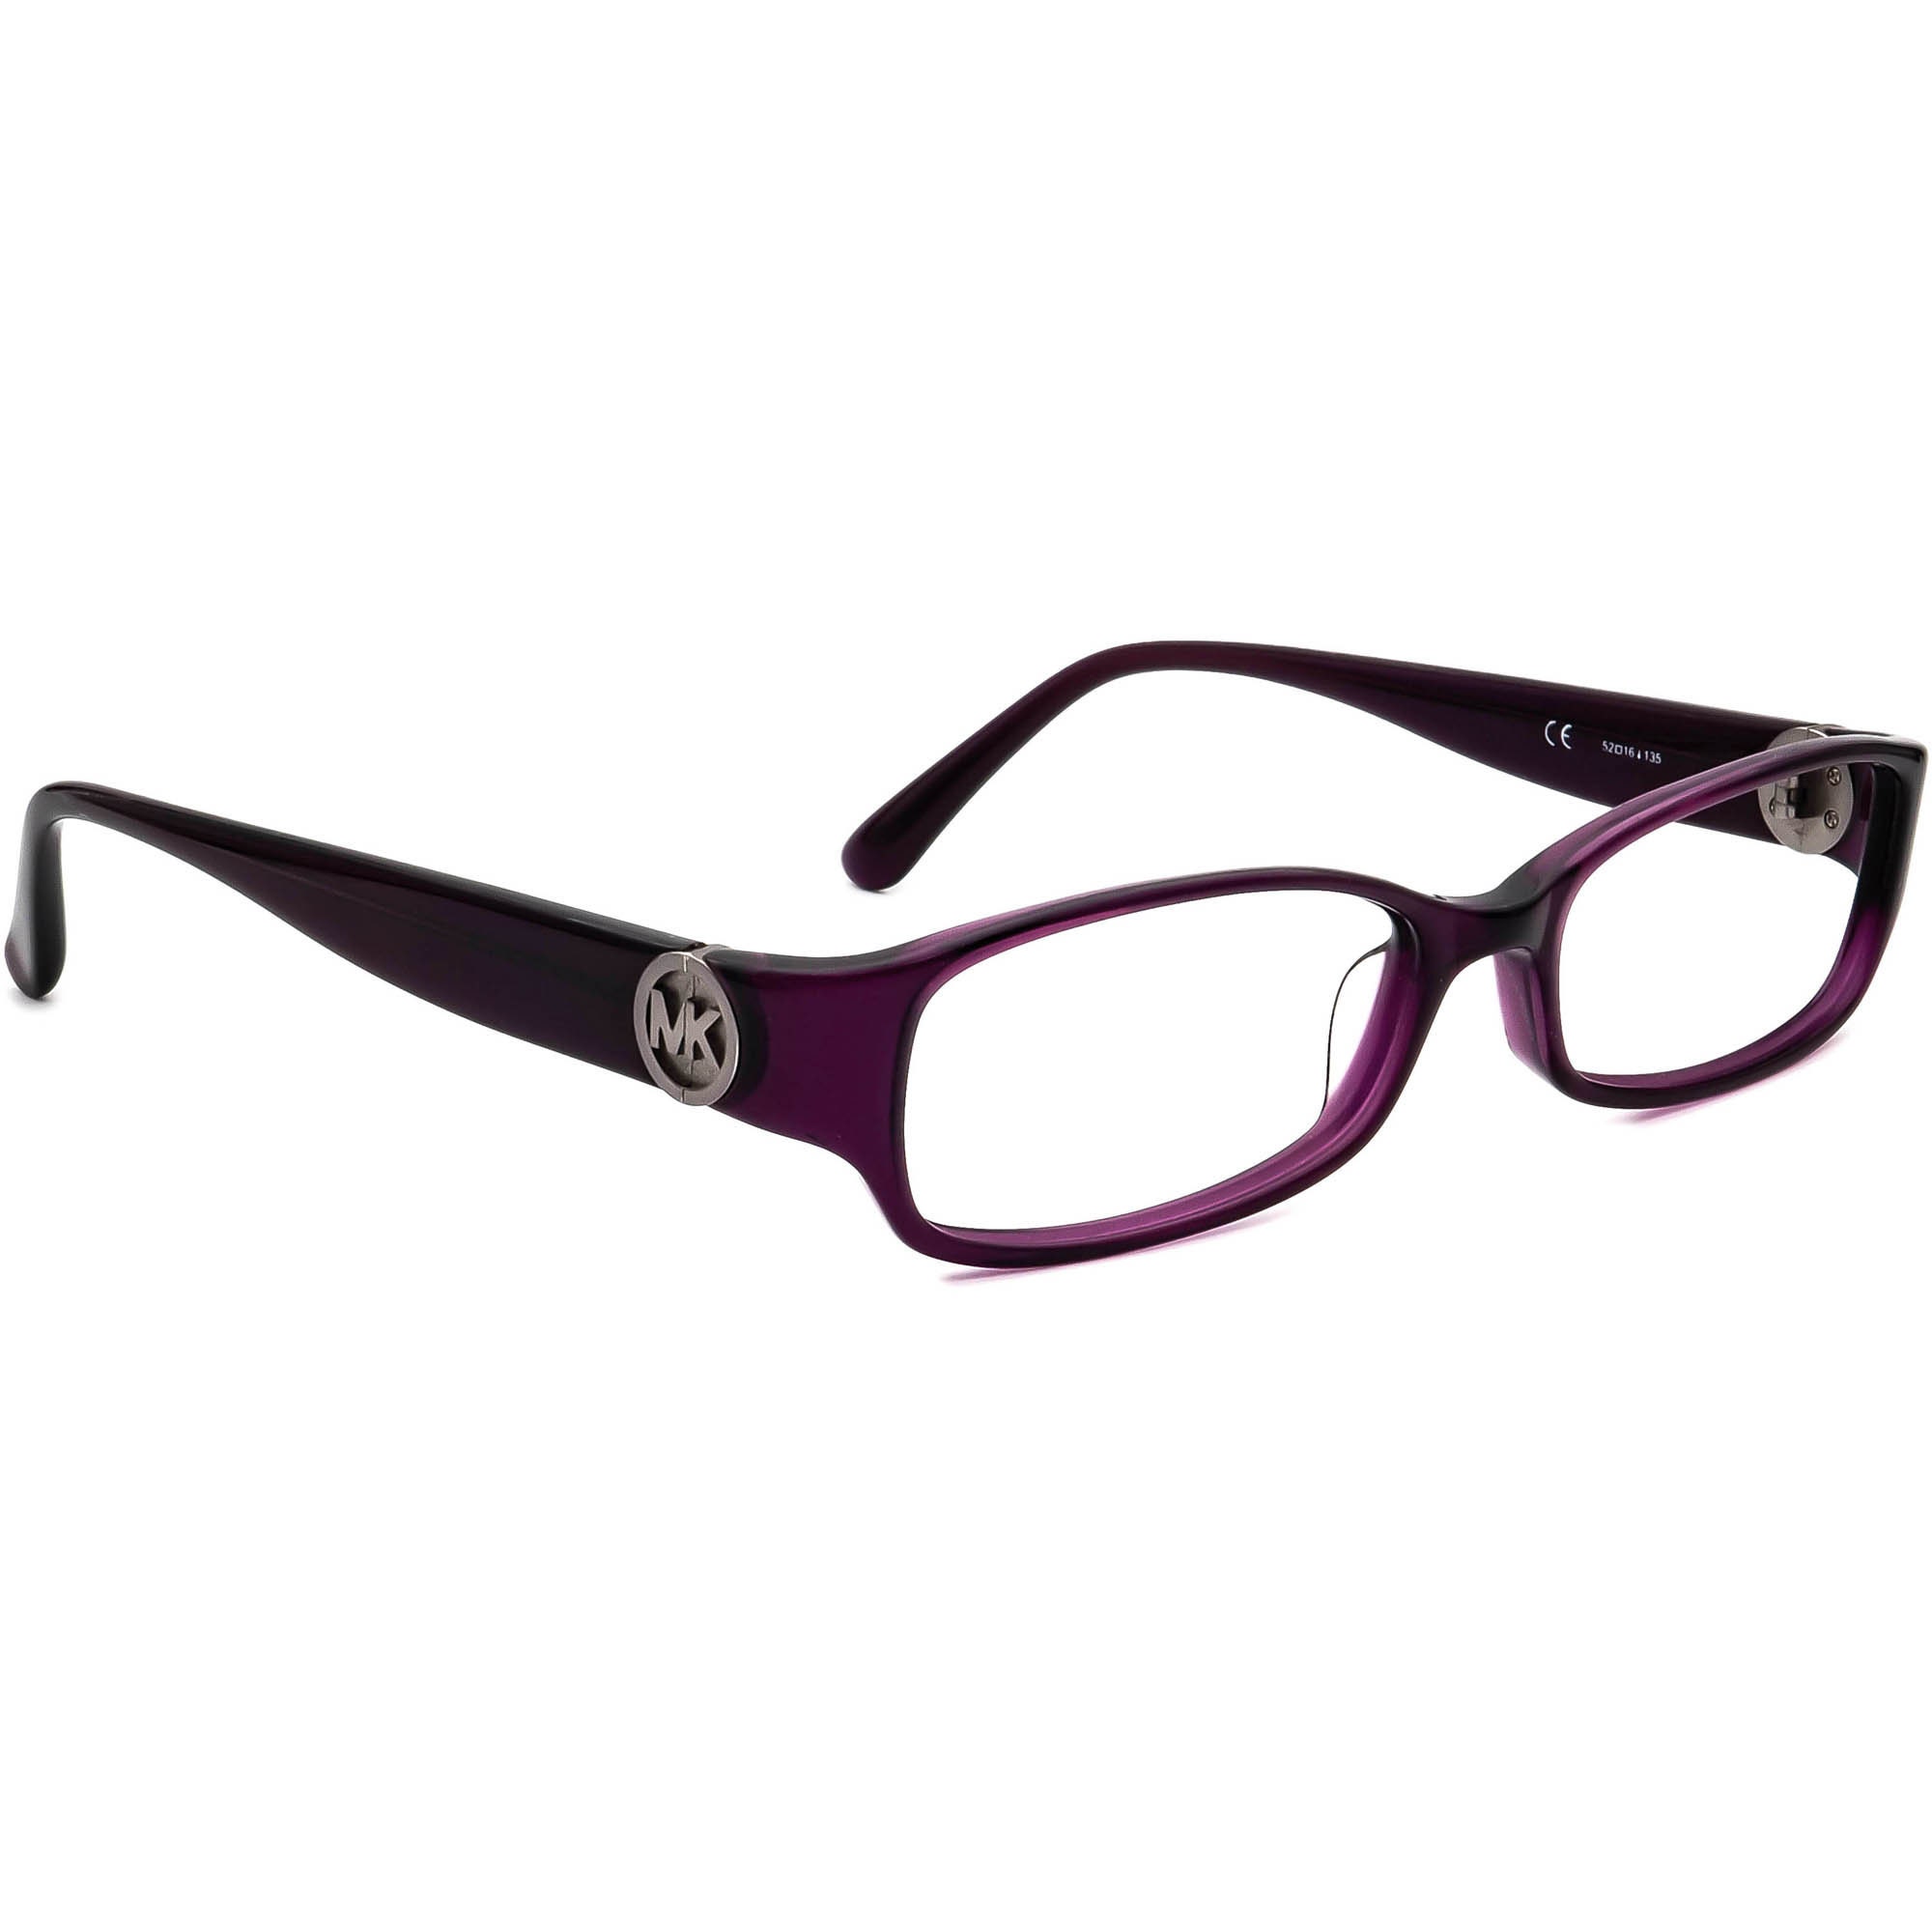 Michael Kors Women's Eyeglasses MK843 513 Purple - Etsy Denmark